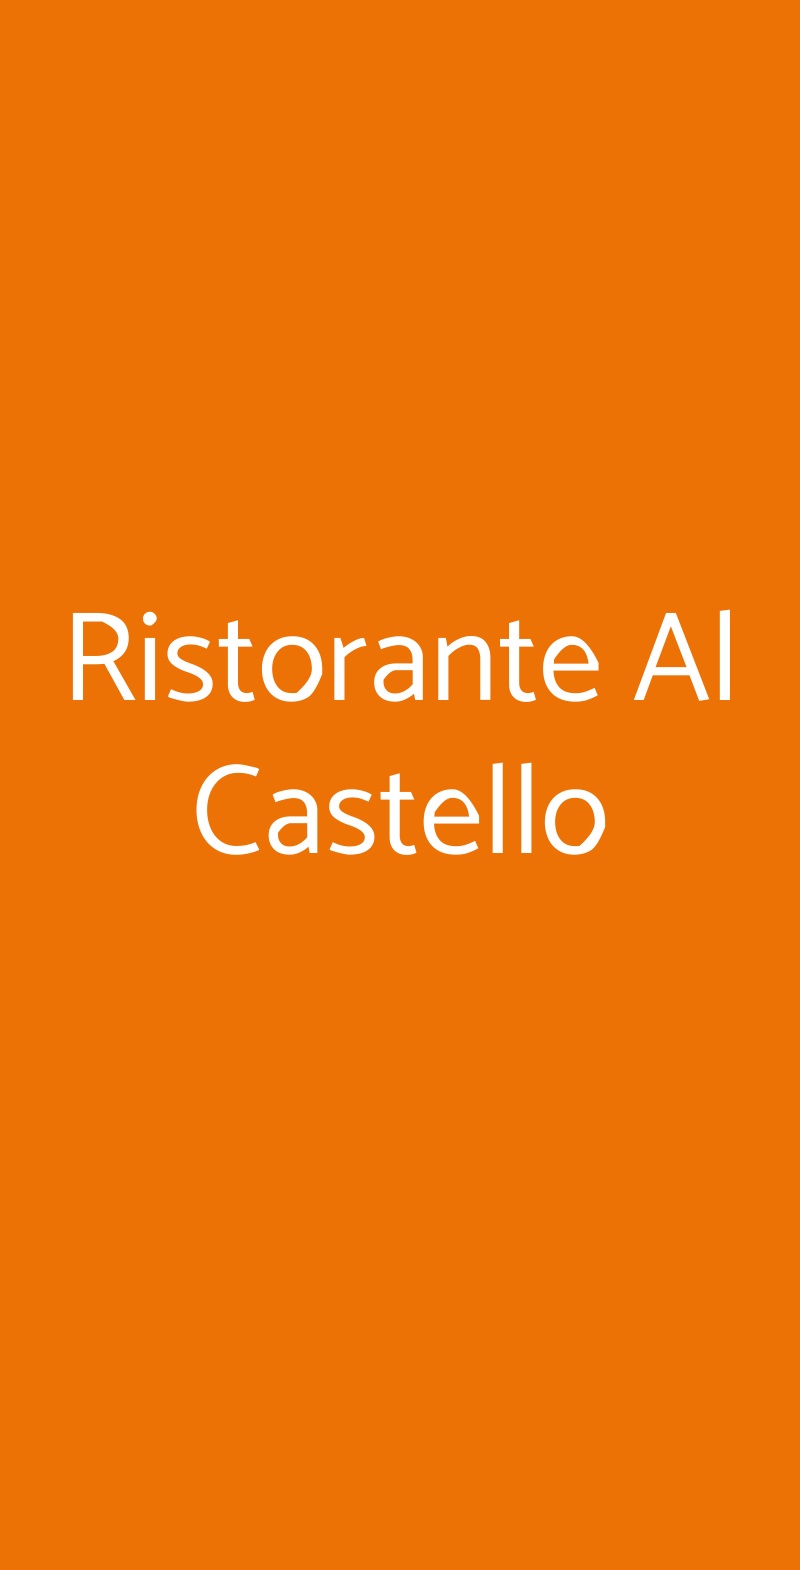 Ristorante Al Castello Luzzana menù 1 pagina